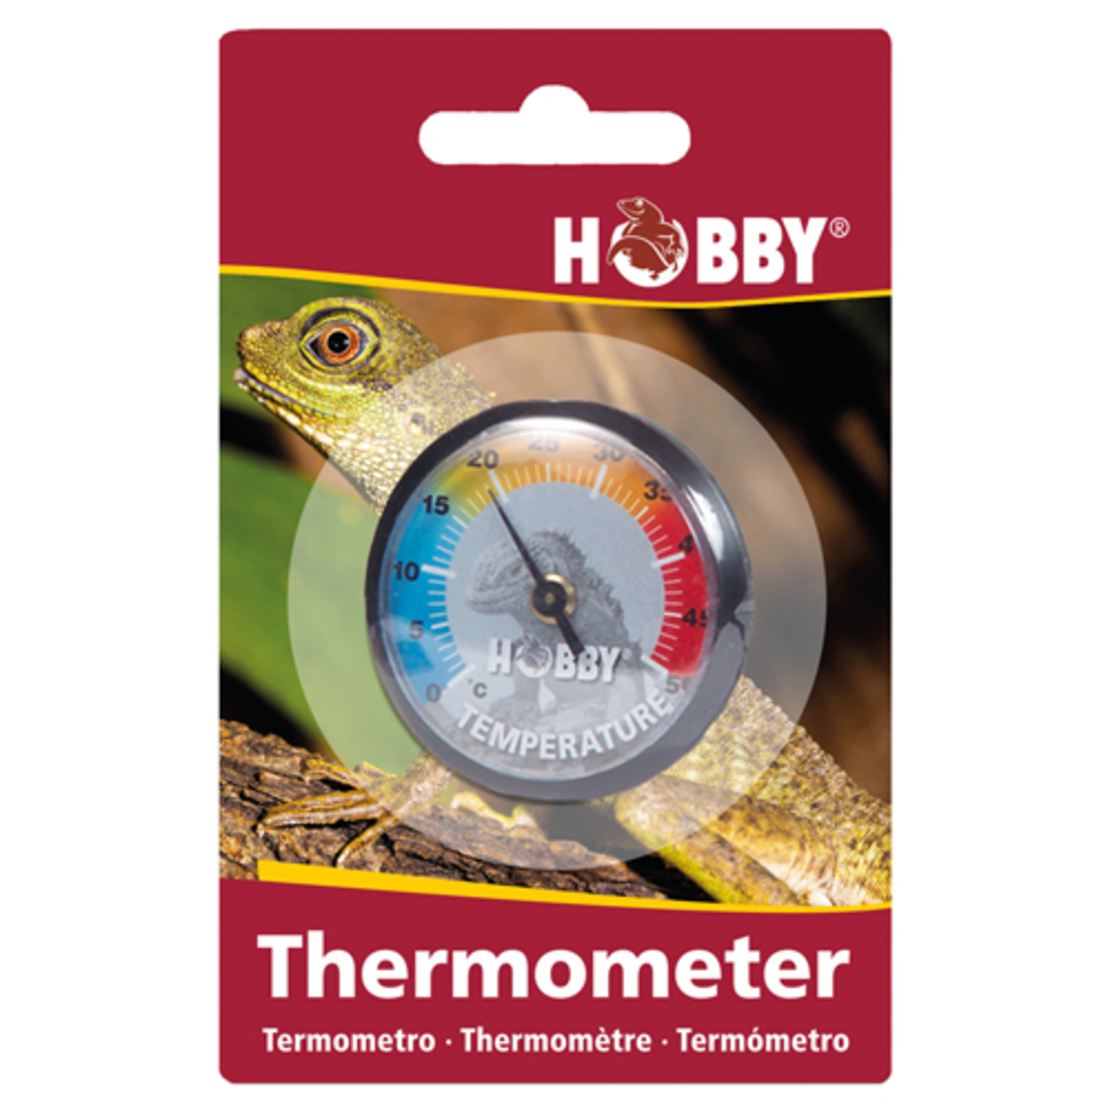 מד טמפרטורה אנלוגי עגול, הובי | Analog Thermometer